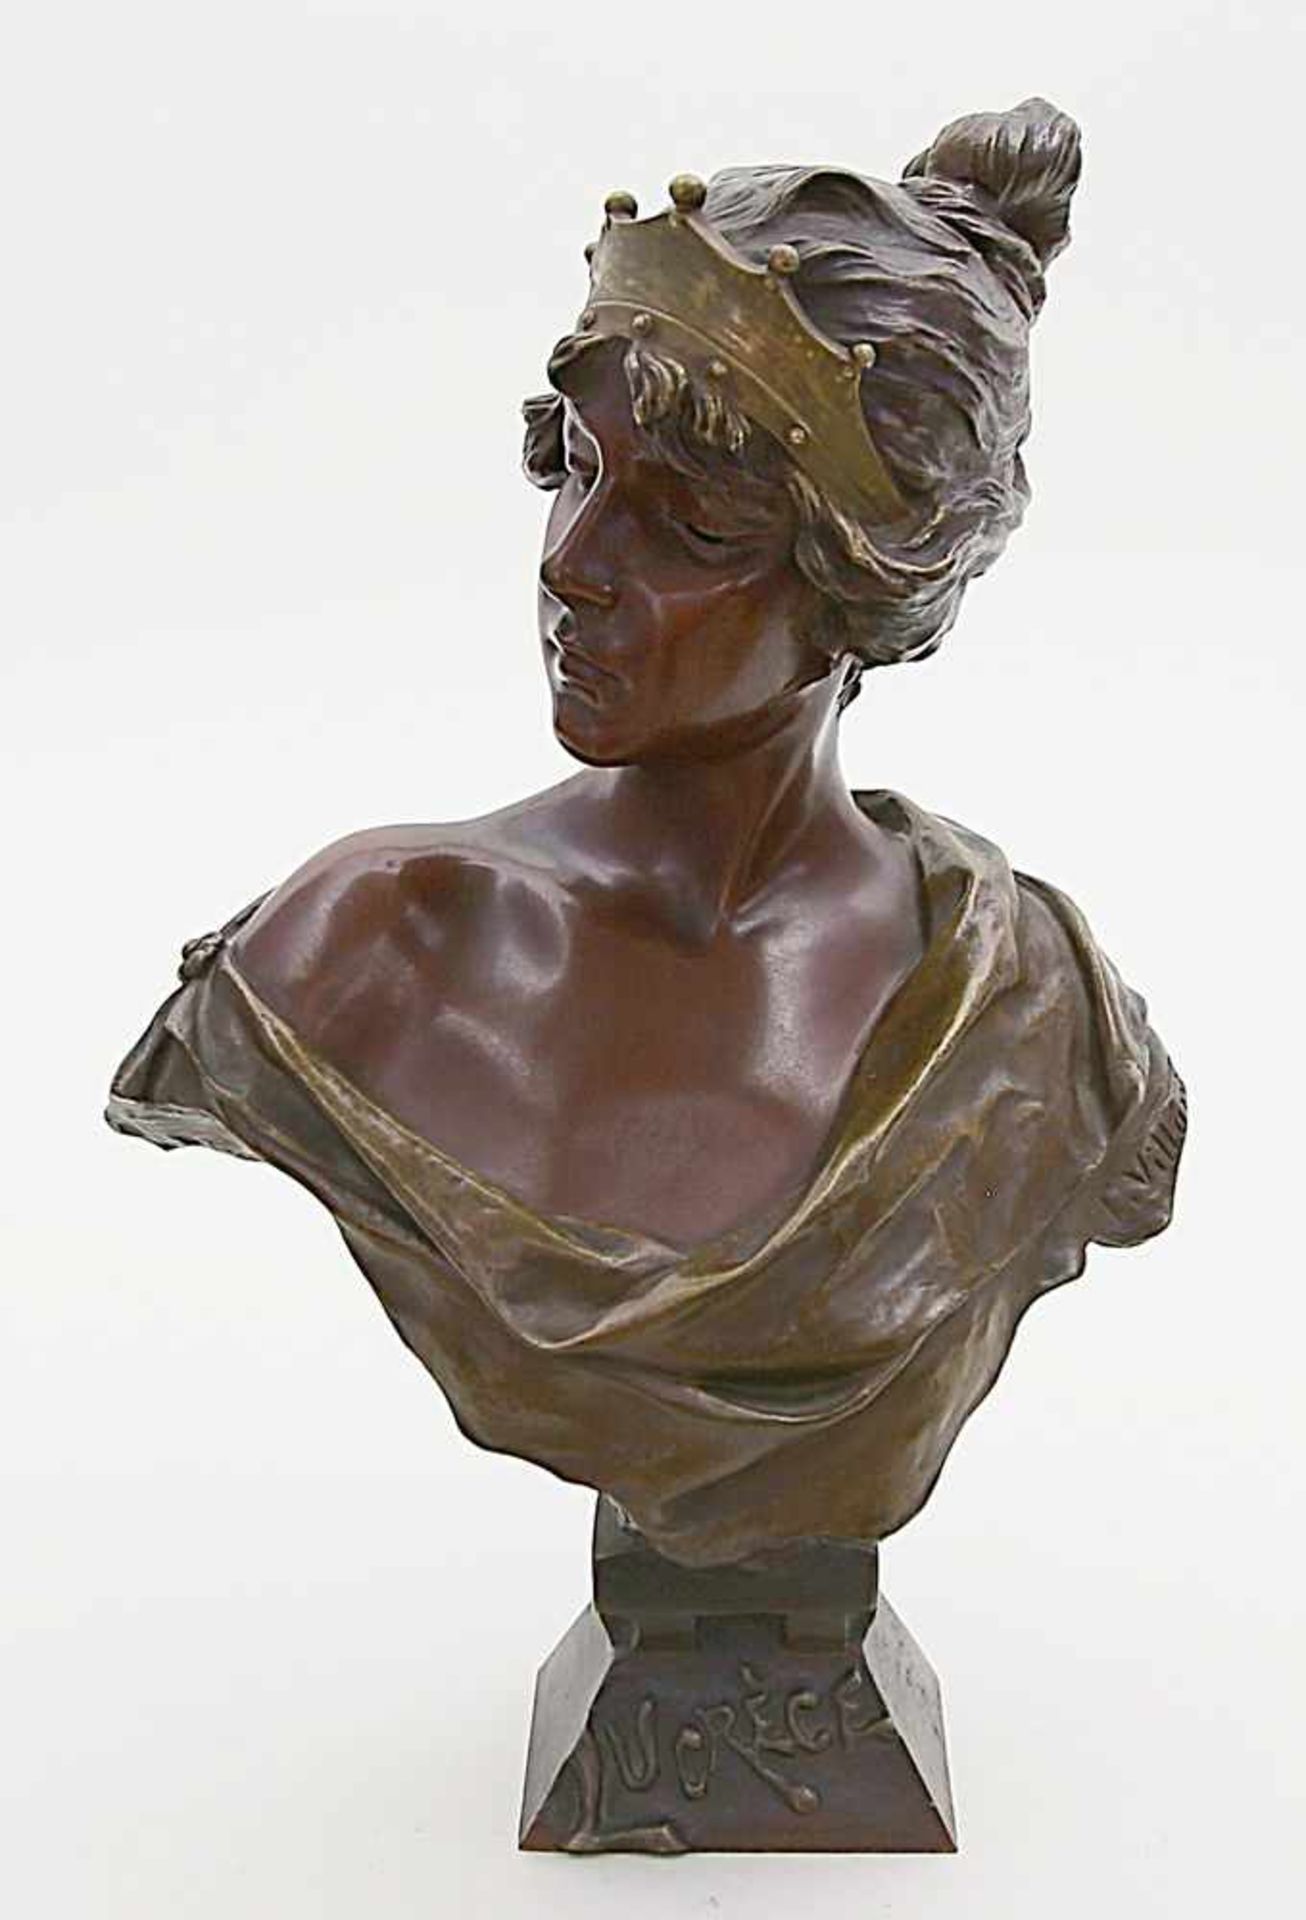 Villanis, Emmanuel (1858 Lille - Paris 1914)Jugendstil-Mädchenbüste: "Lucrèce", so auf dem Sockel